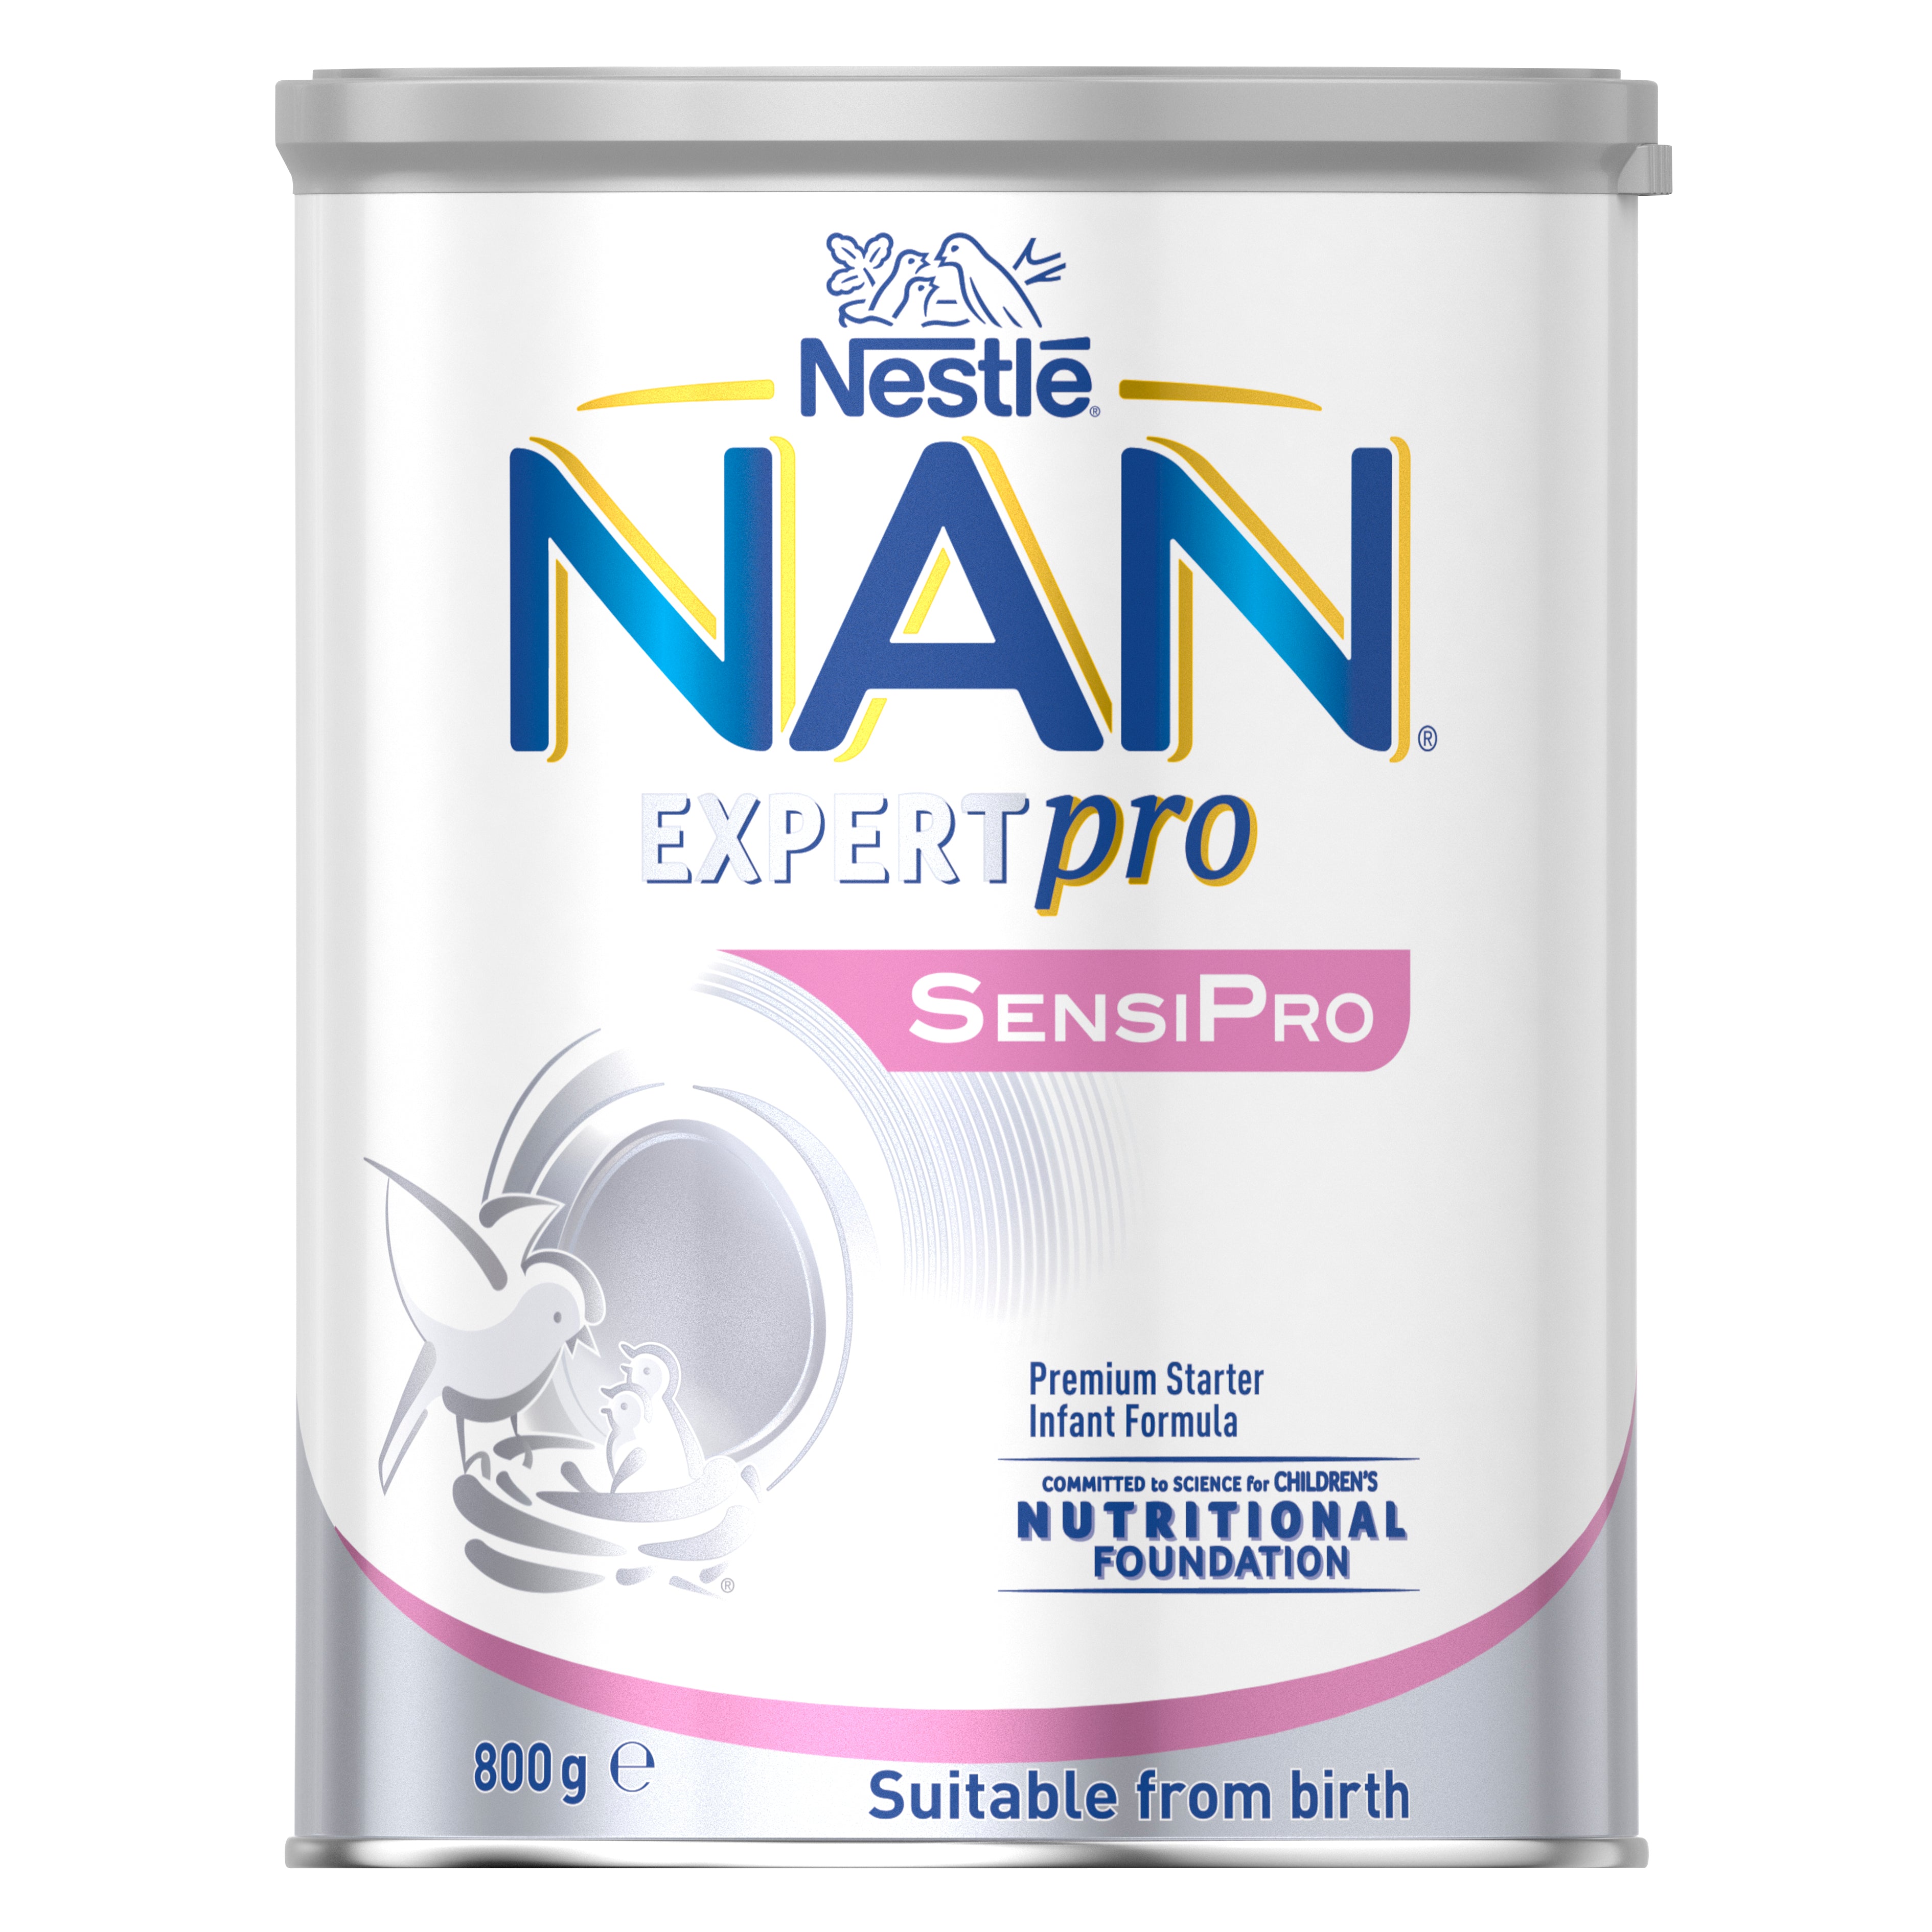 Nestlé Nidina 3 Premium 800g